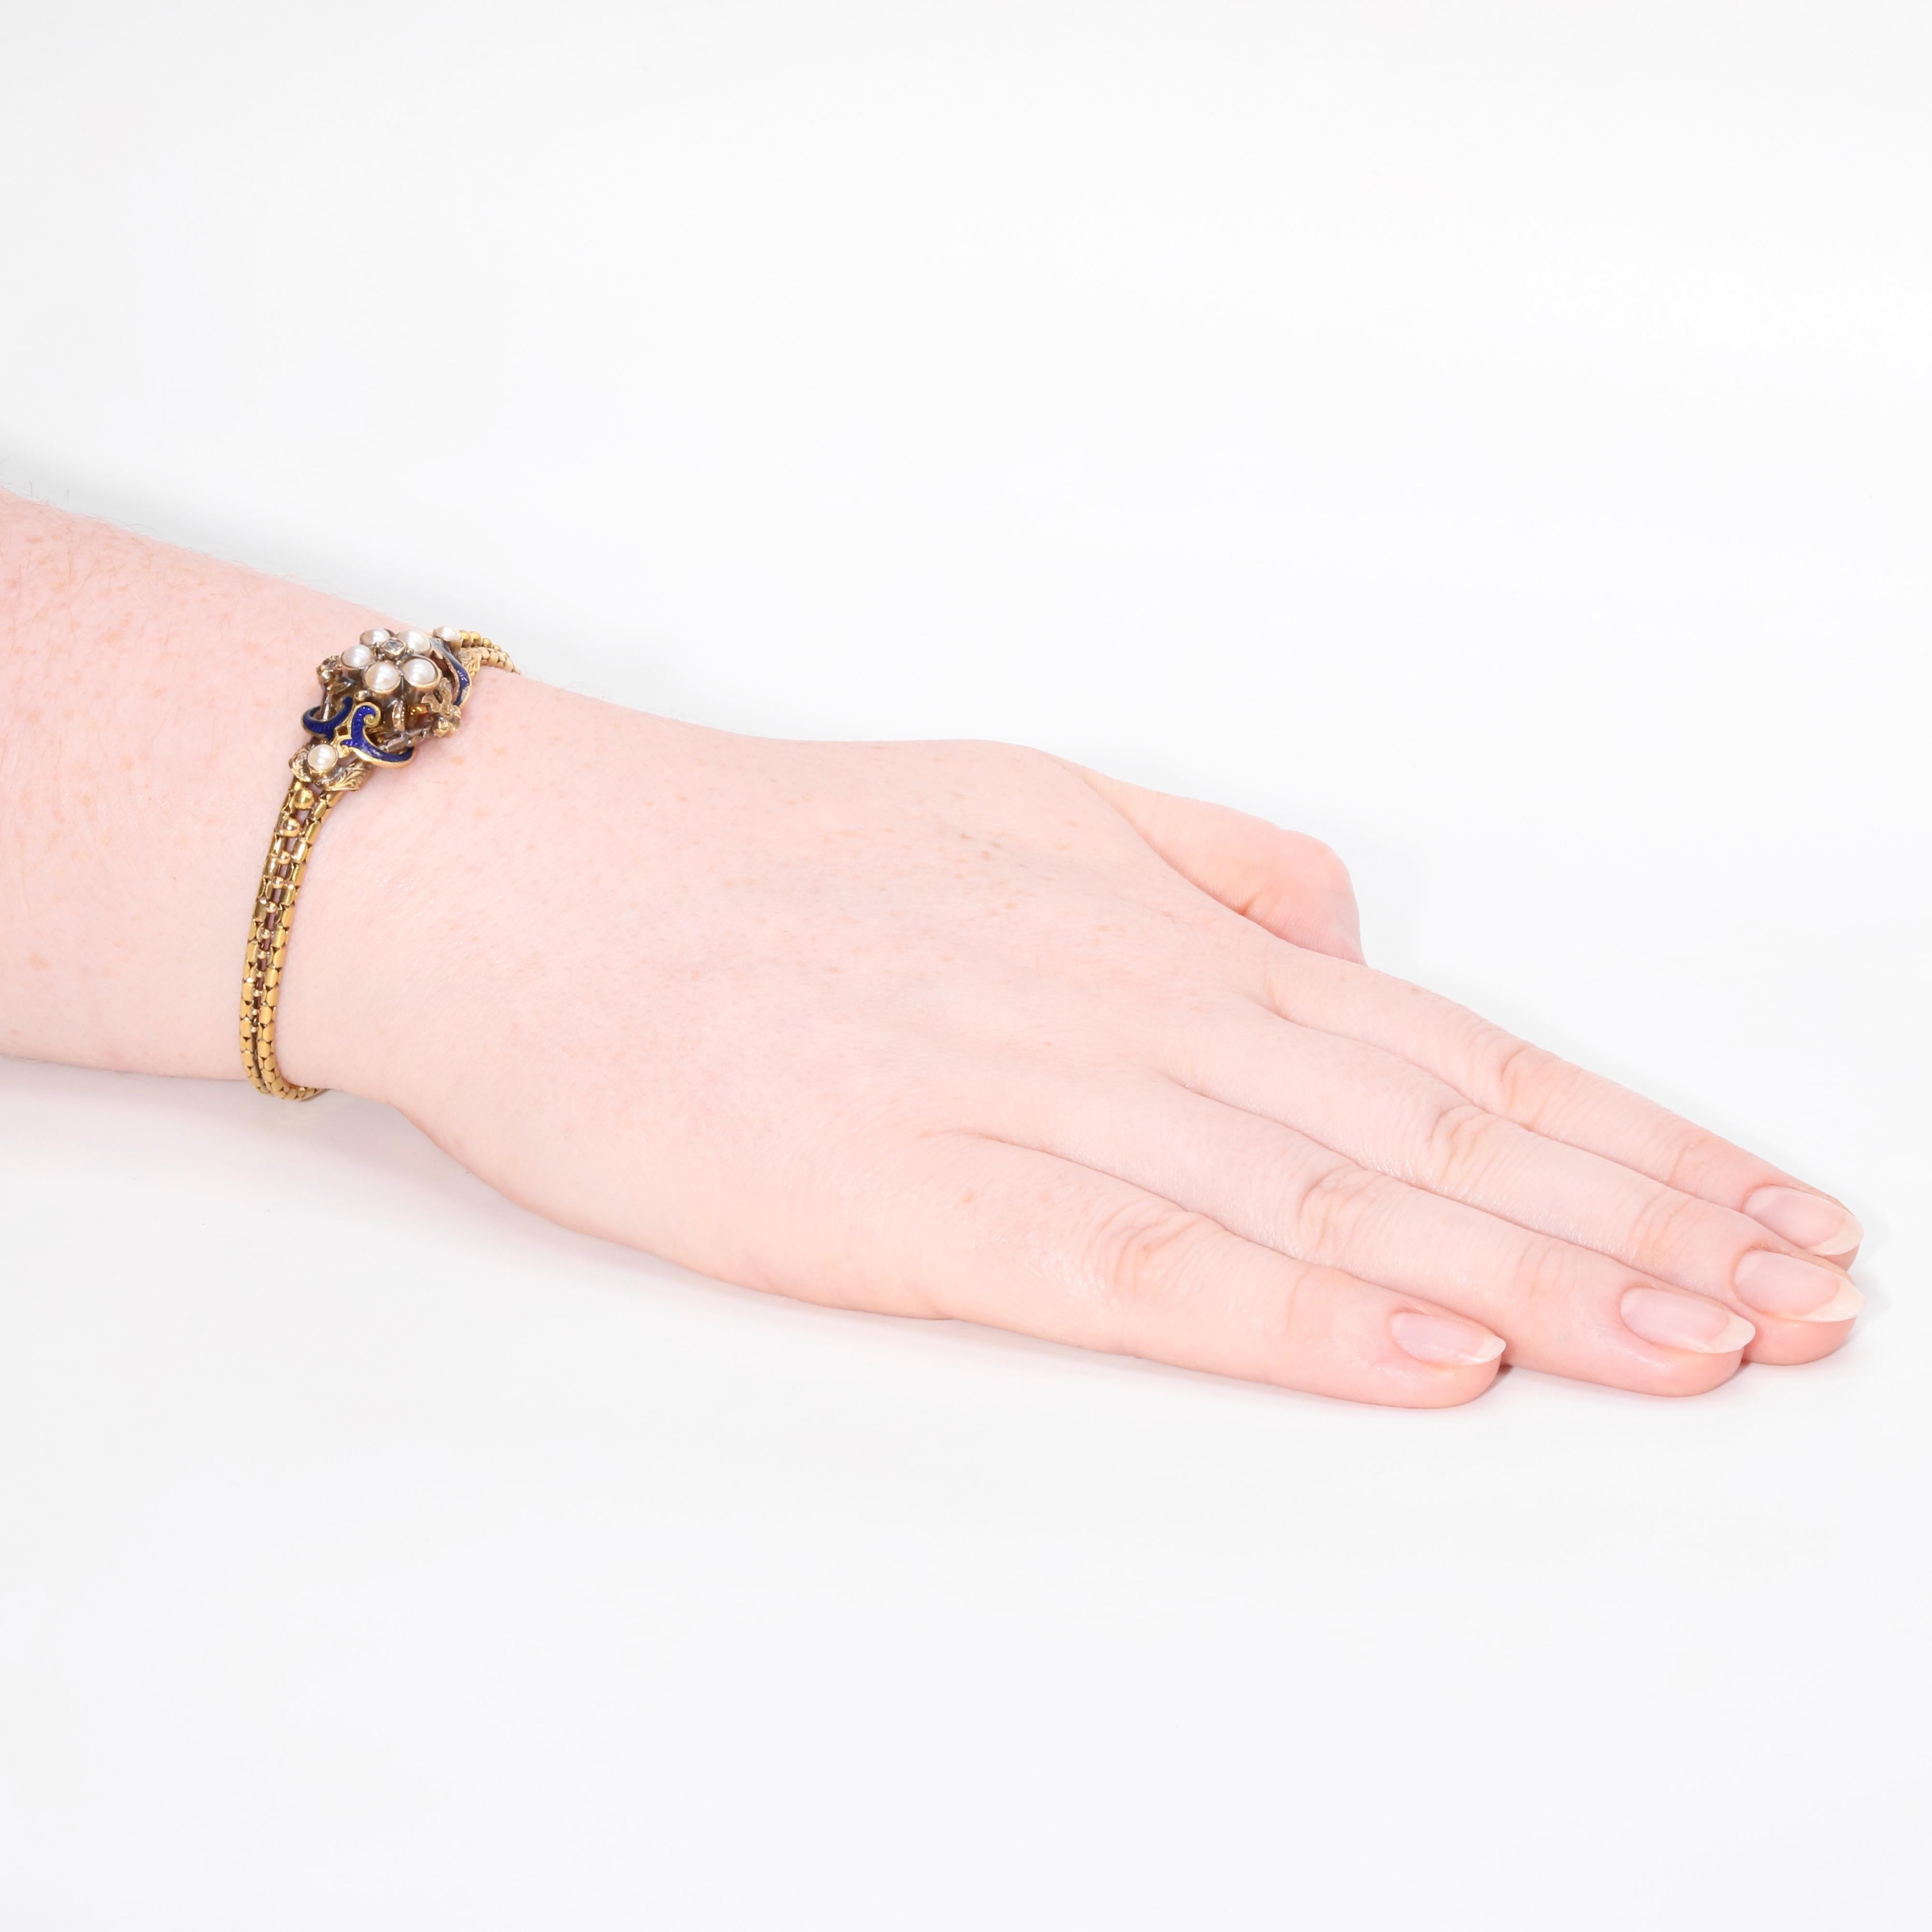 Un bracelet victorien en diamant, perle, émail et or jaune, comprenant un diamant de taille ancienne, sept perles, serties dans de l'or jaune 18 carats, orné d'émail bleu. 

Ce magnifique bracelet victorien est serti au centre d'un diamant taillé en